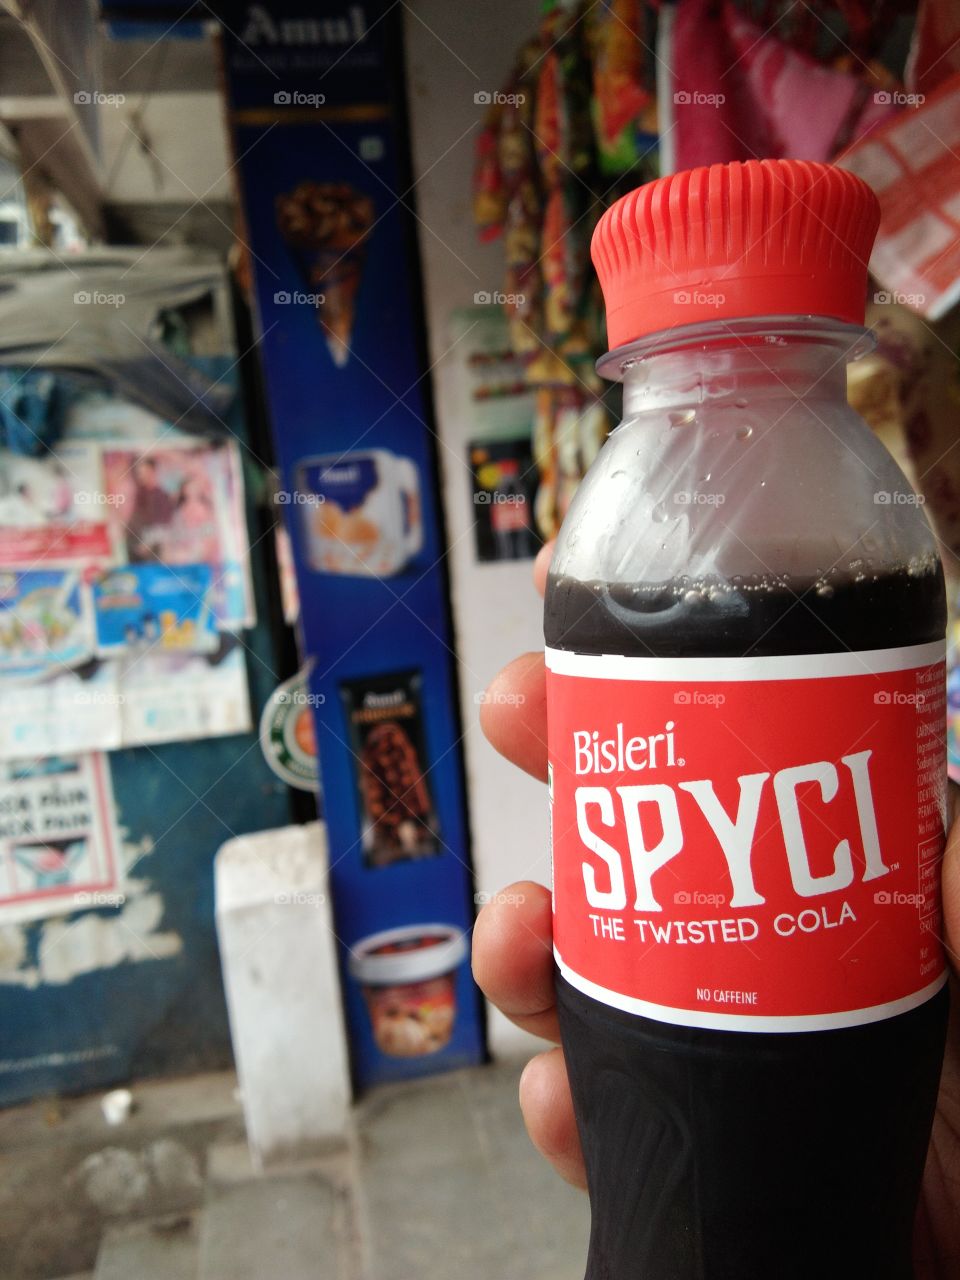 Spyci Cola